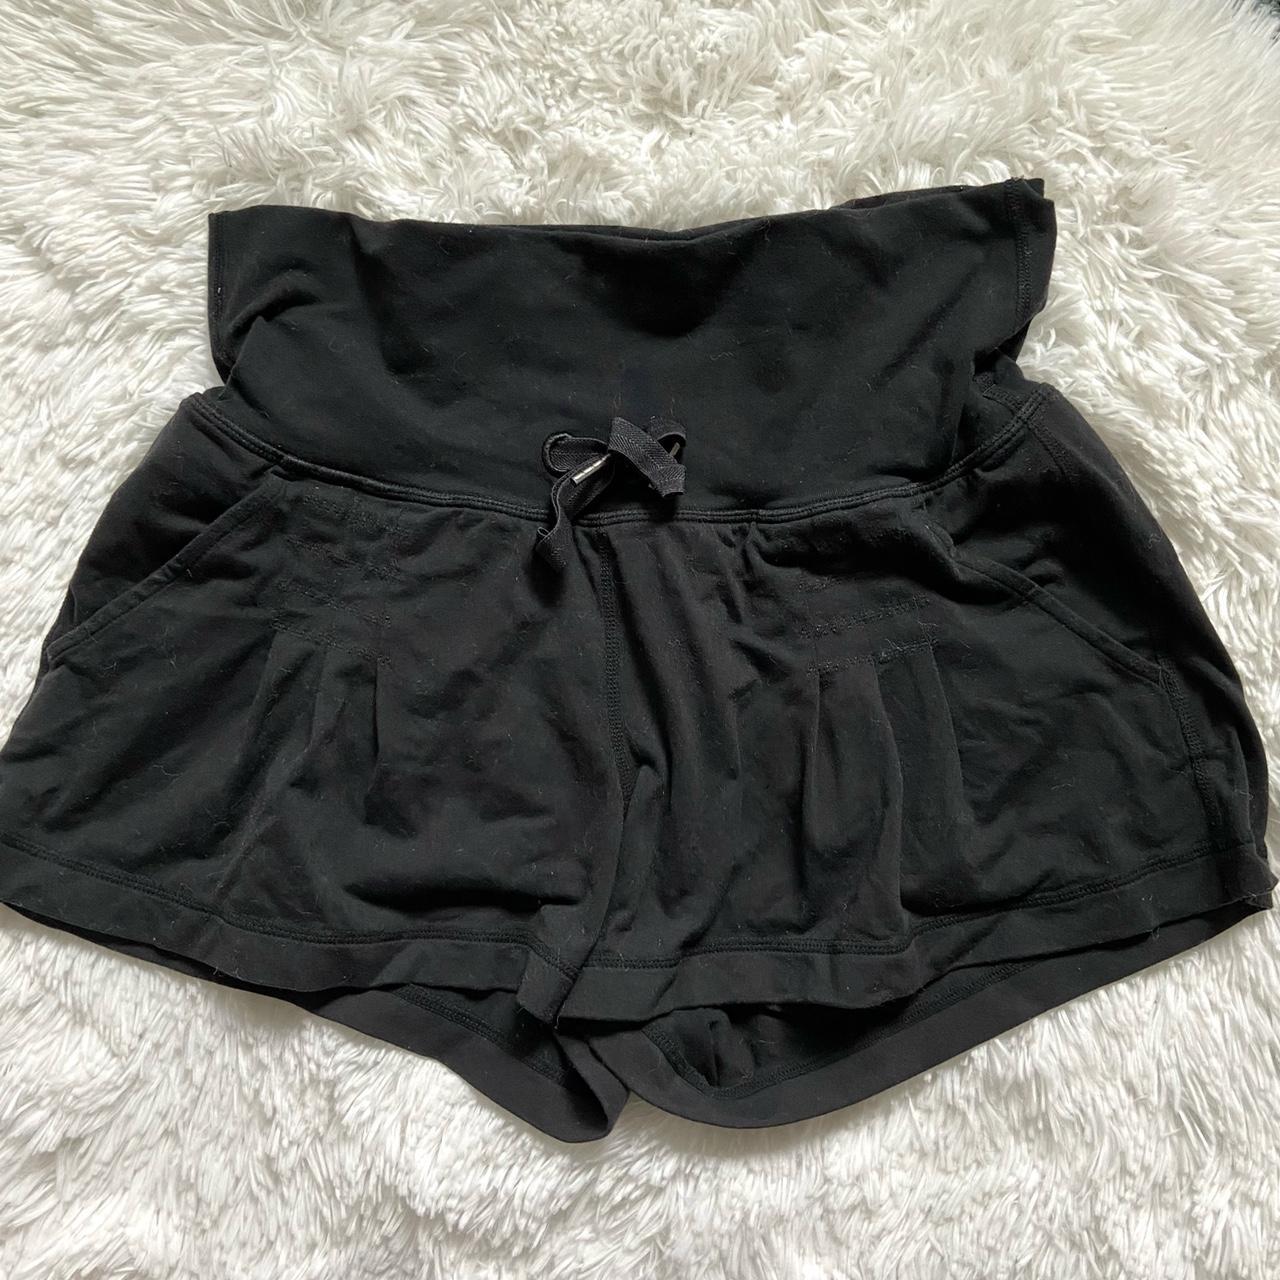 Lululemon black shorts with side pockets Super... - Depop